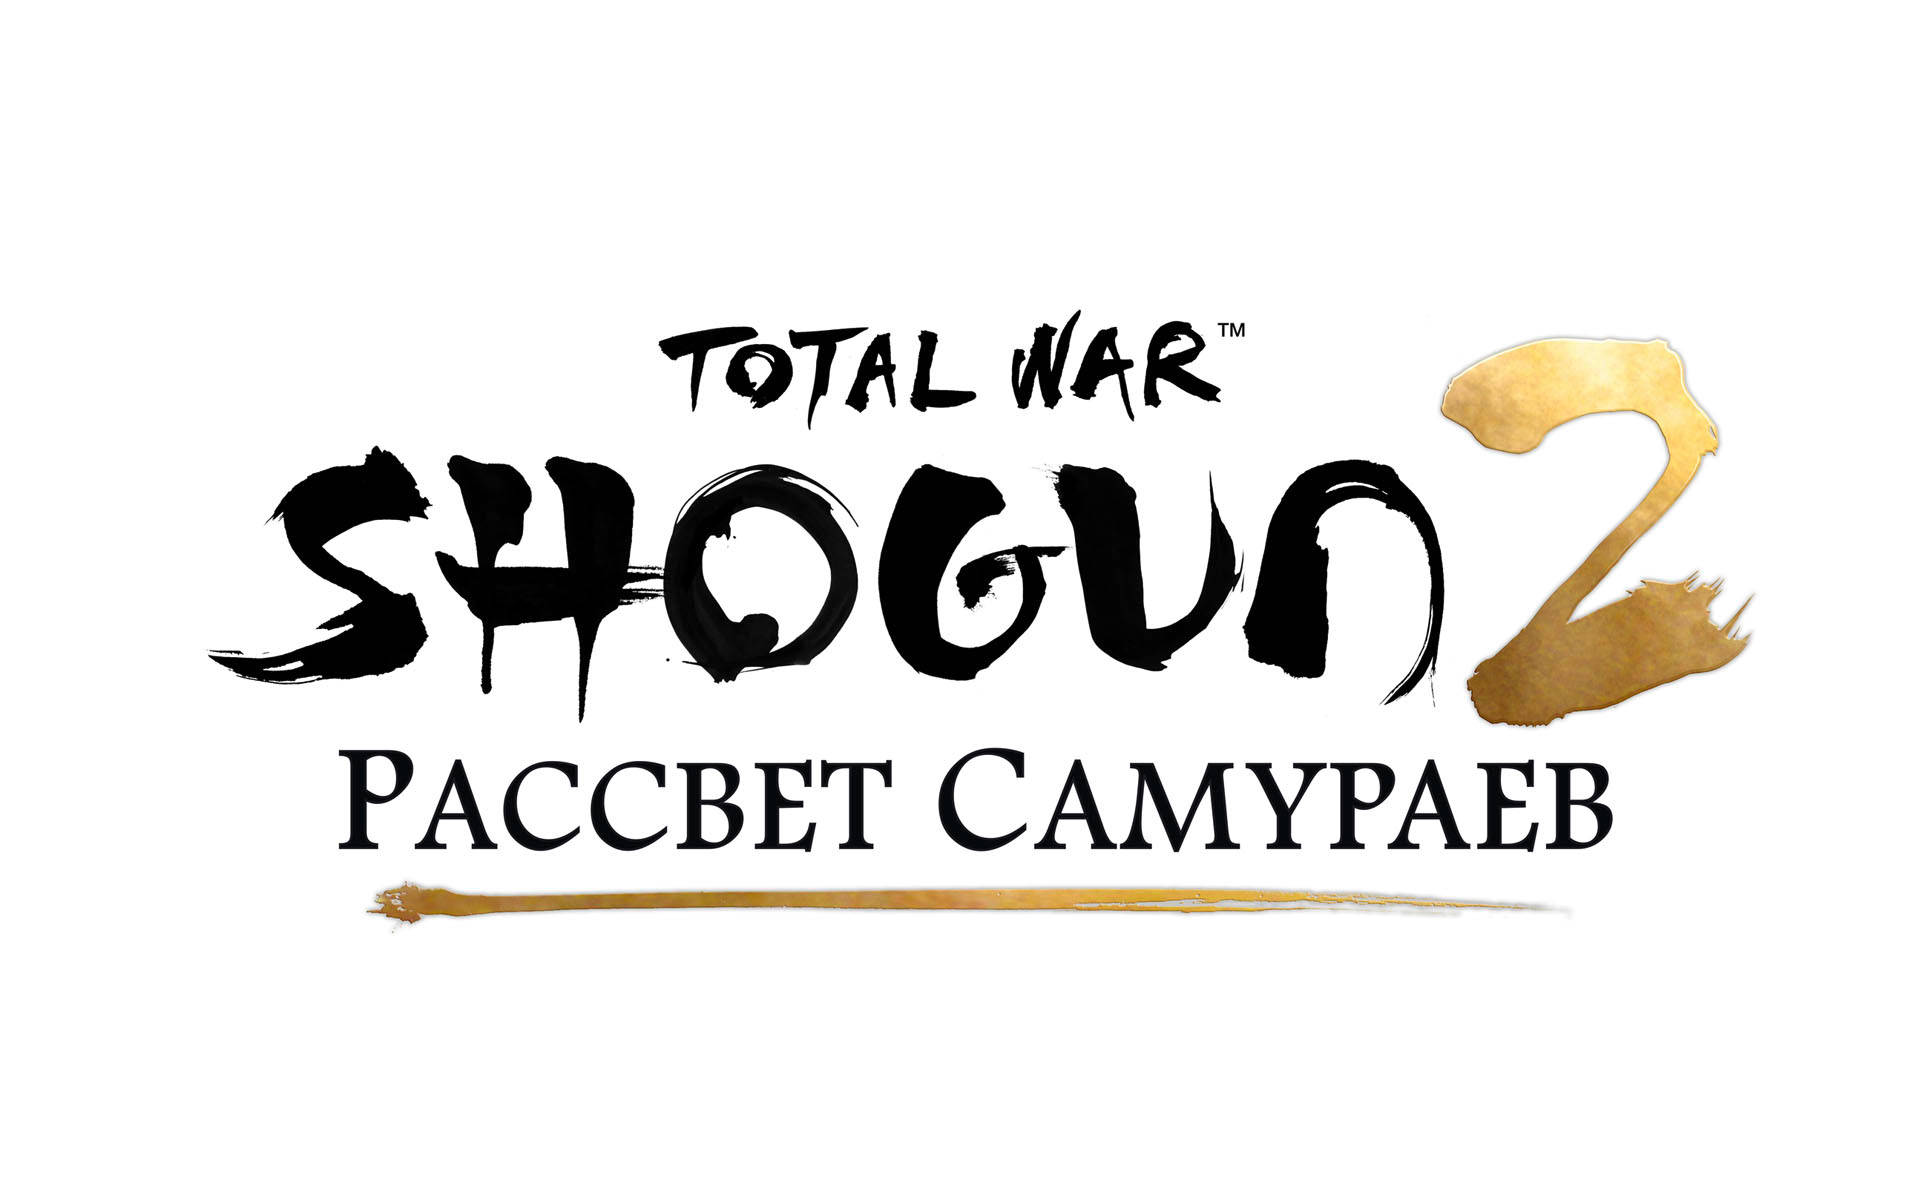 Das Shogun-logo Von Total War Warhammer 2 Wallpaper